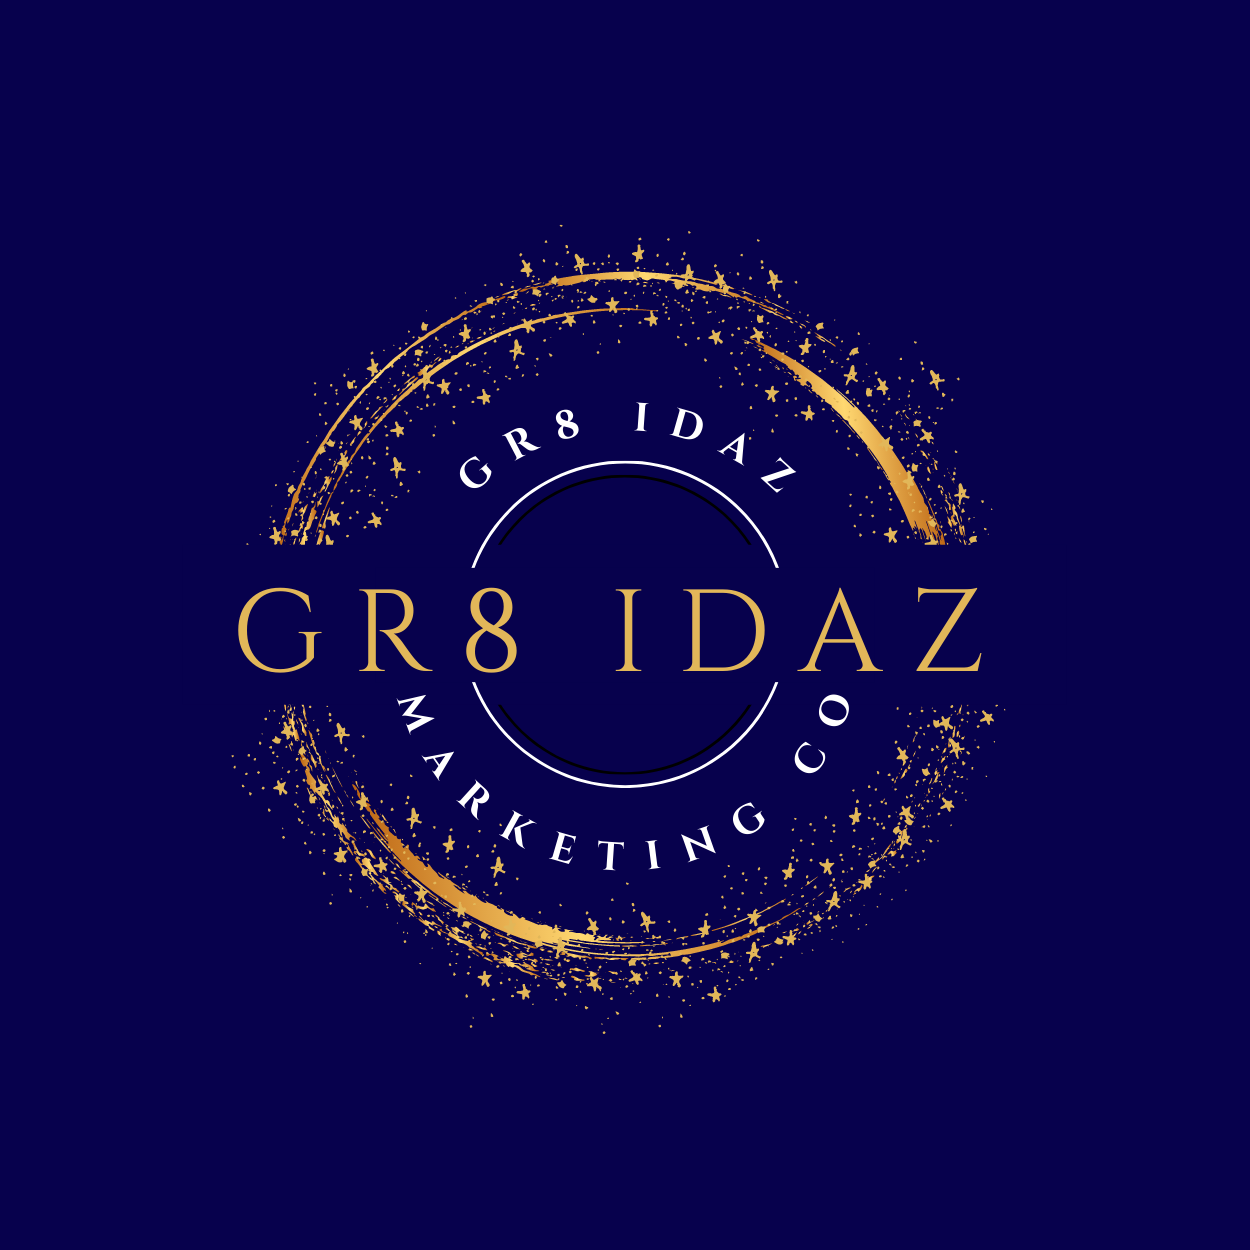 GR8 IDAZ Marketing Company LLC.